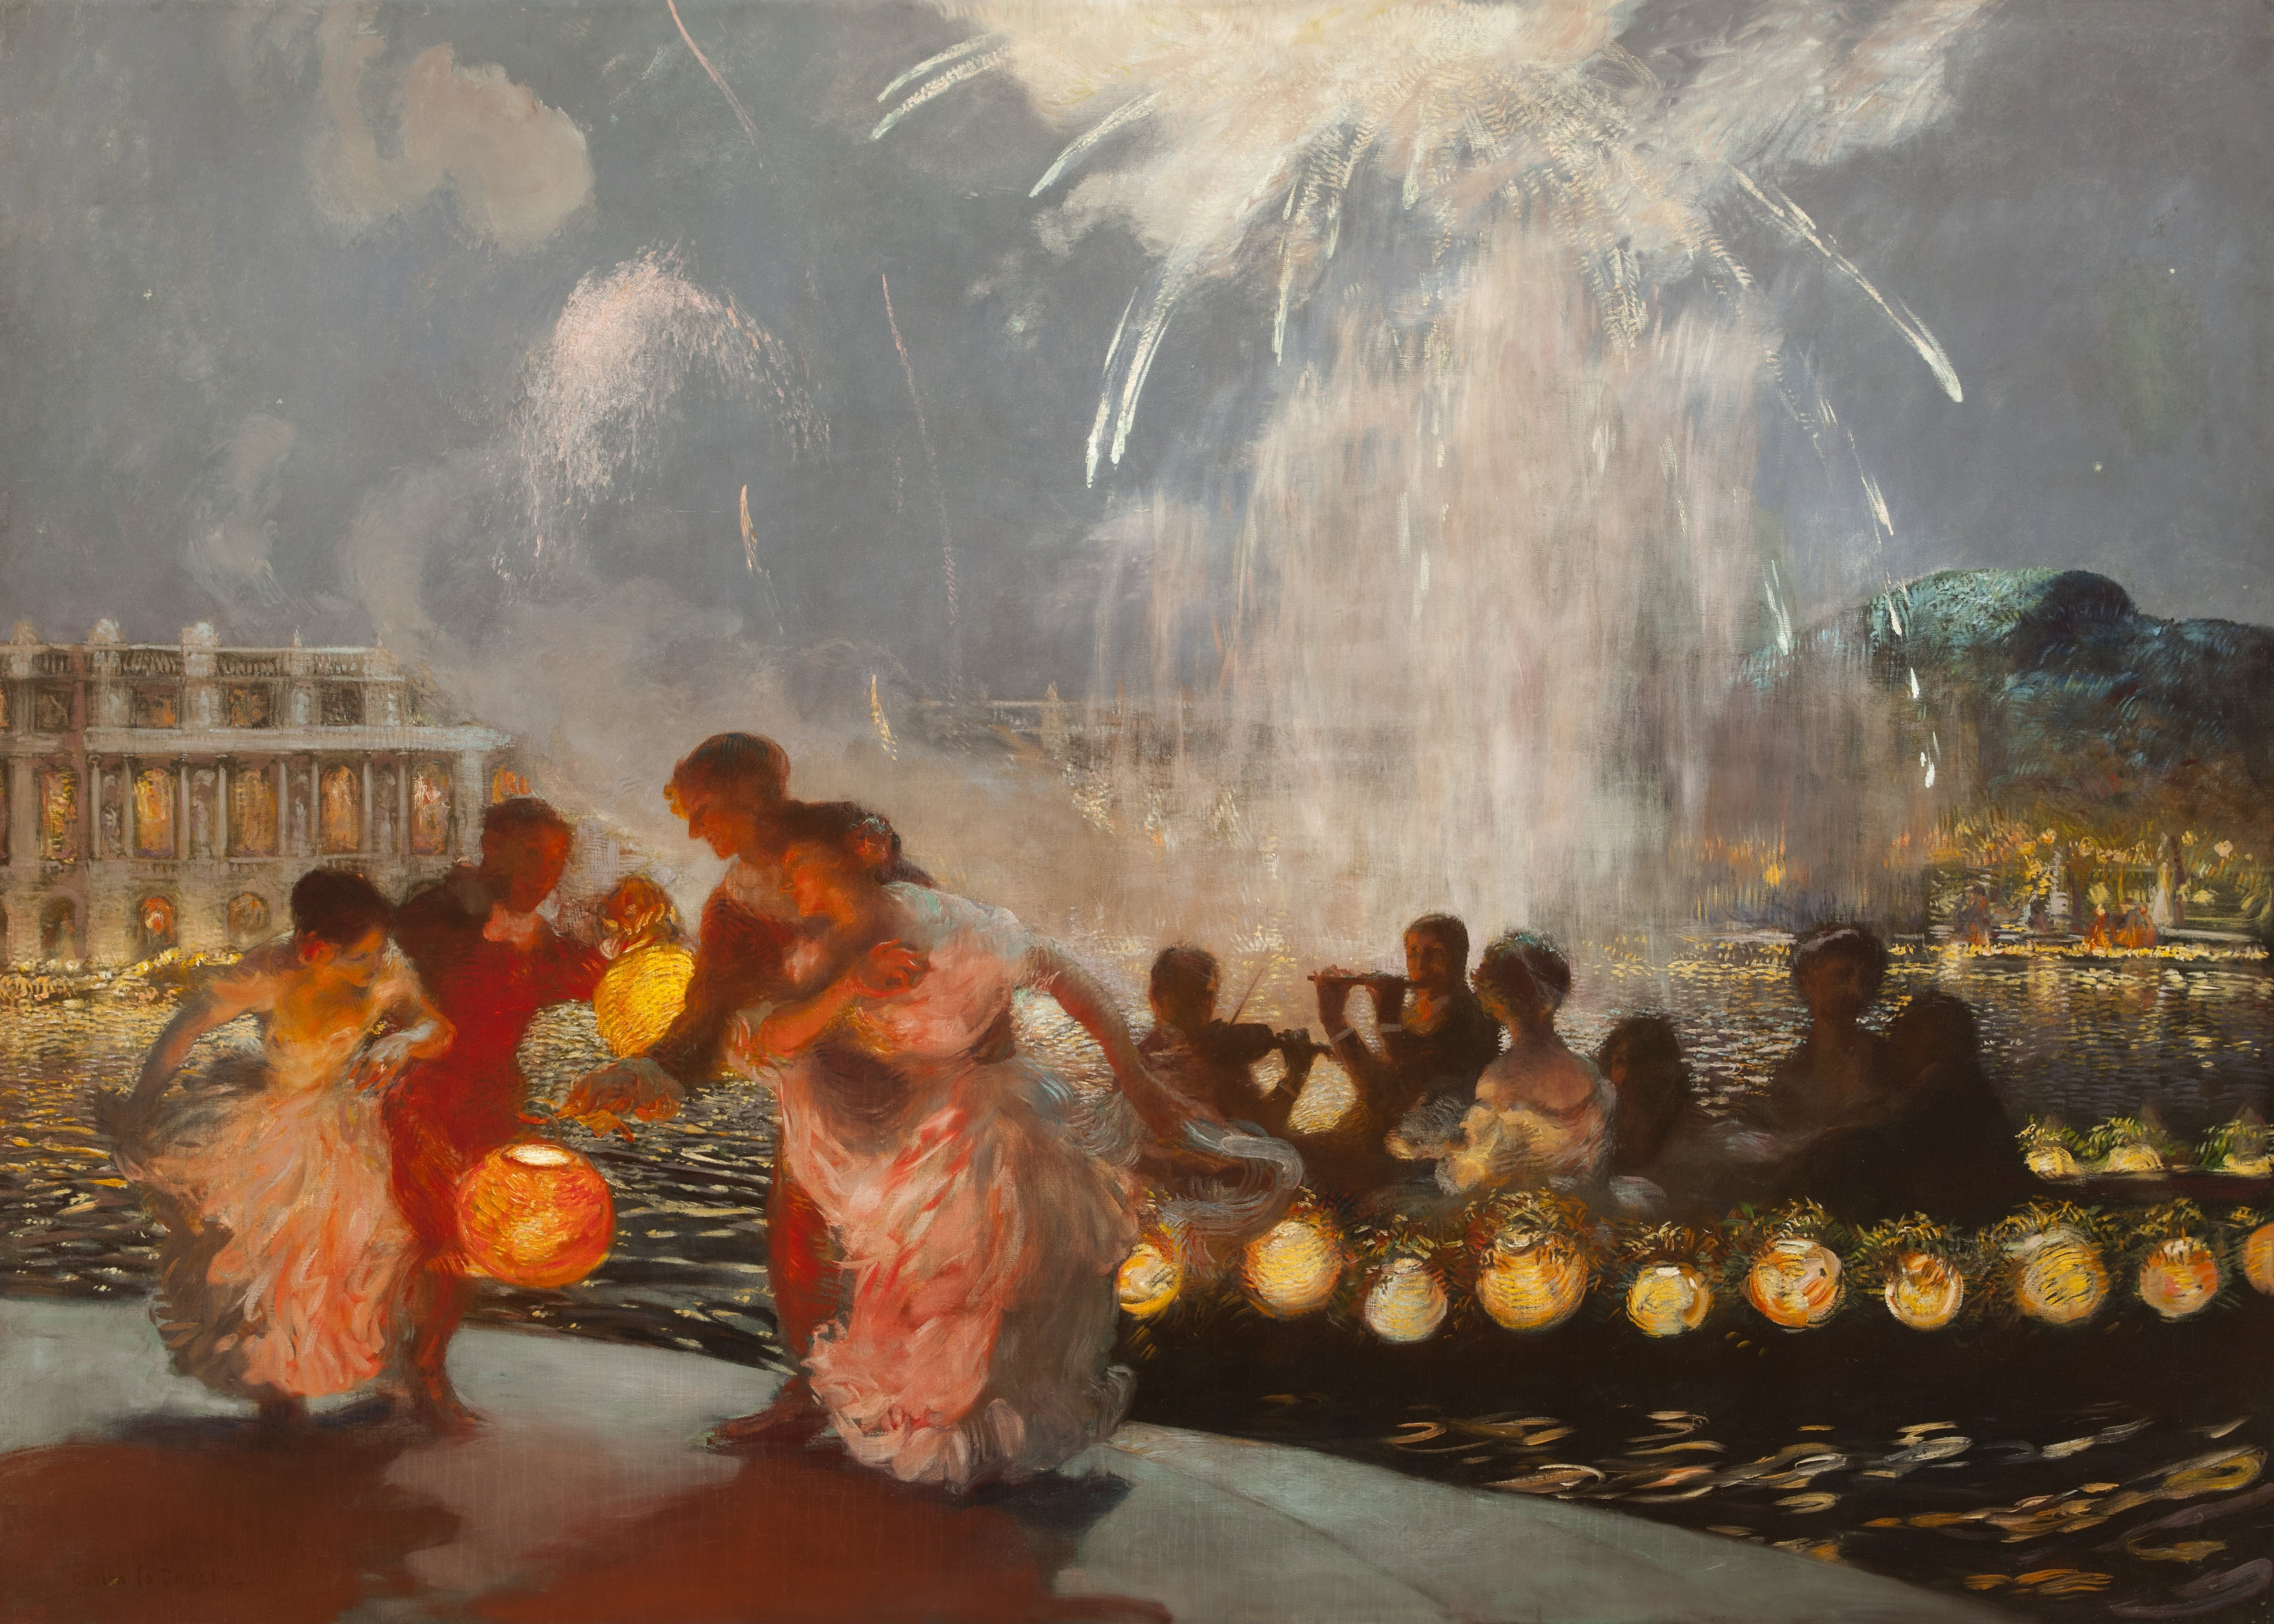 欢乐的节日 by 加斯通·德 拉图什 - 大约1906 - 82 1/2 x 113 1/2 inches 迪克森画廊与花园